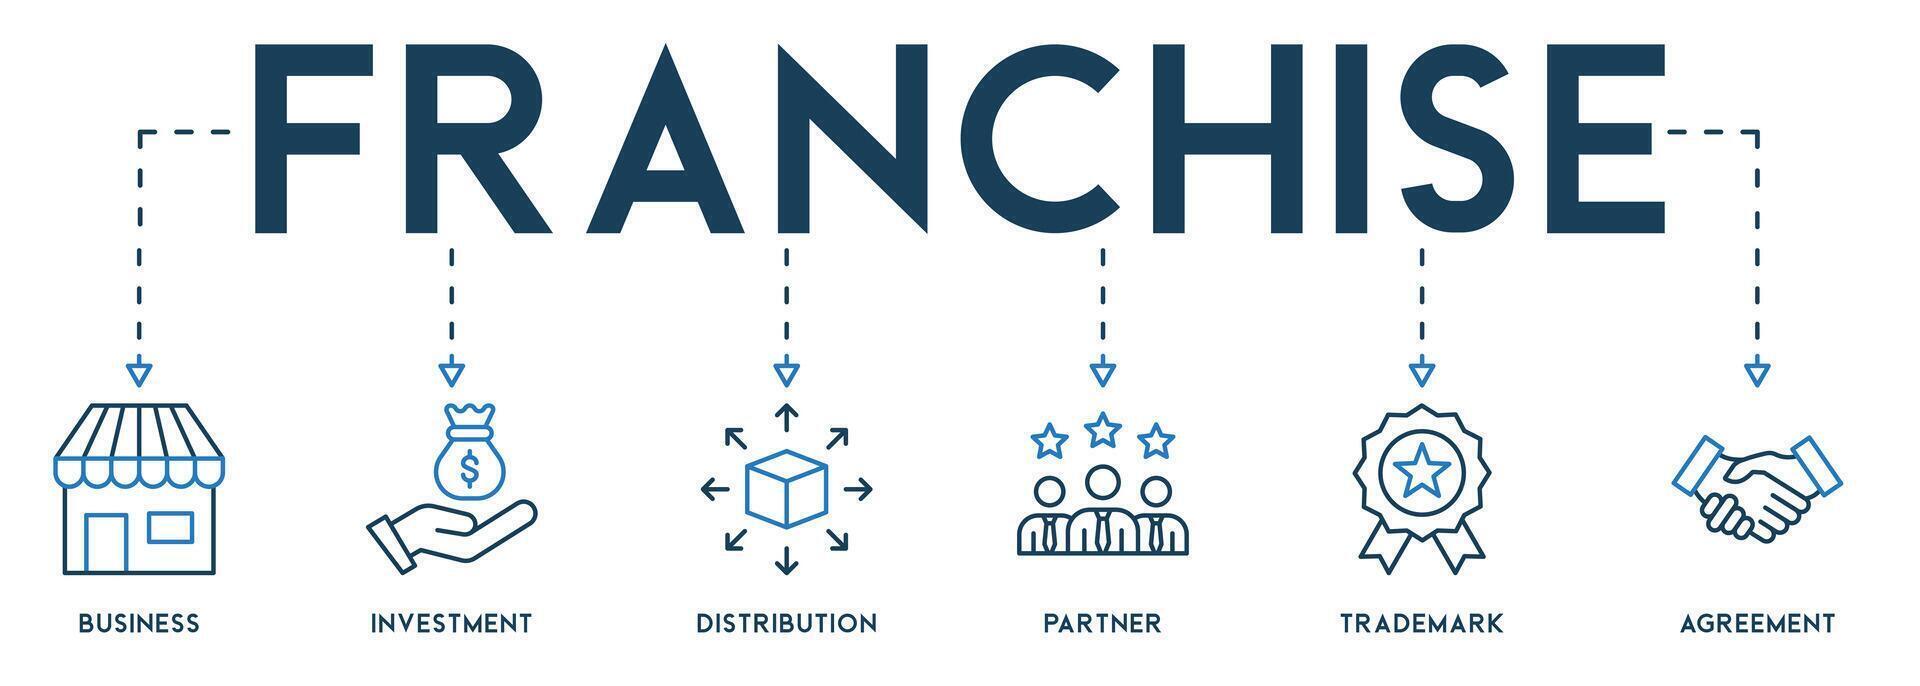 baner franchise företag begrepp. vektor ikoner och nyckelord av företag, investering, distribution, partner, varumärke och avtal